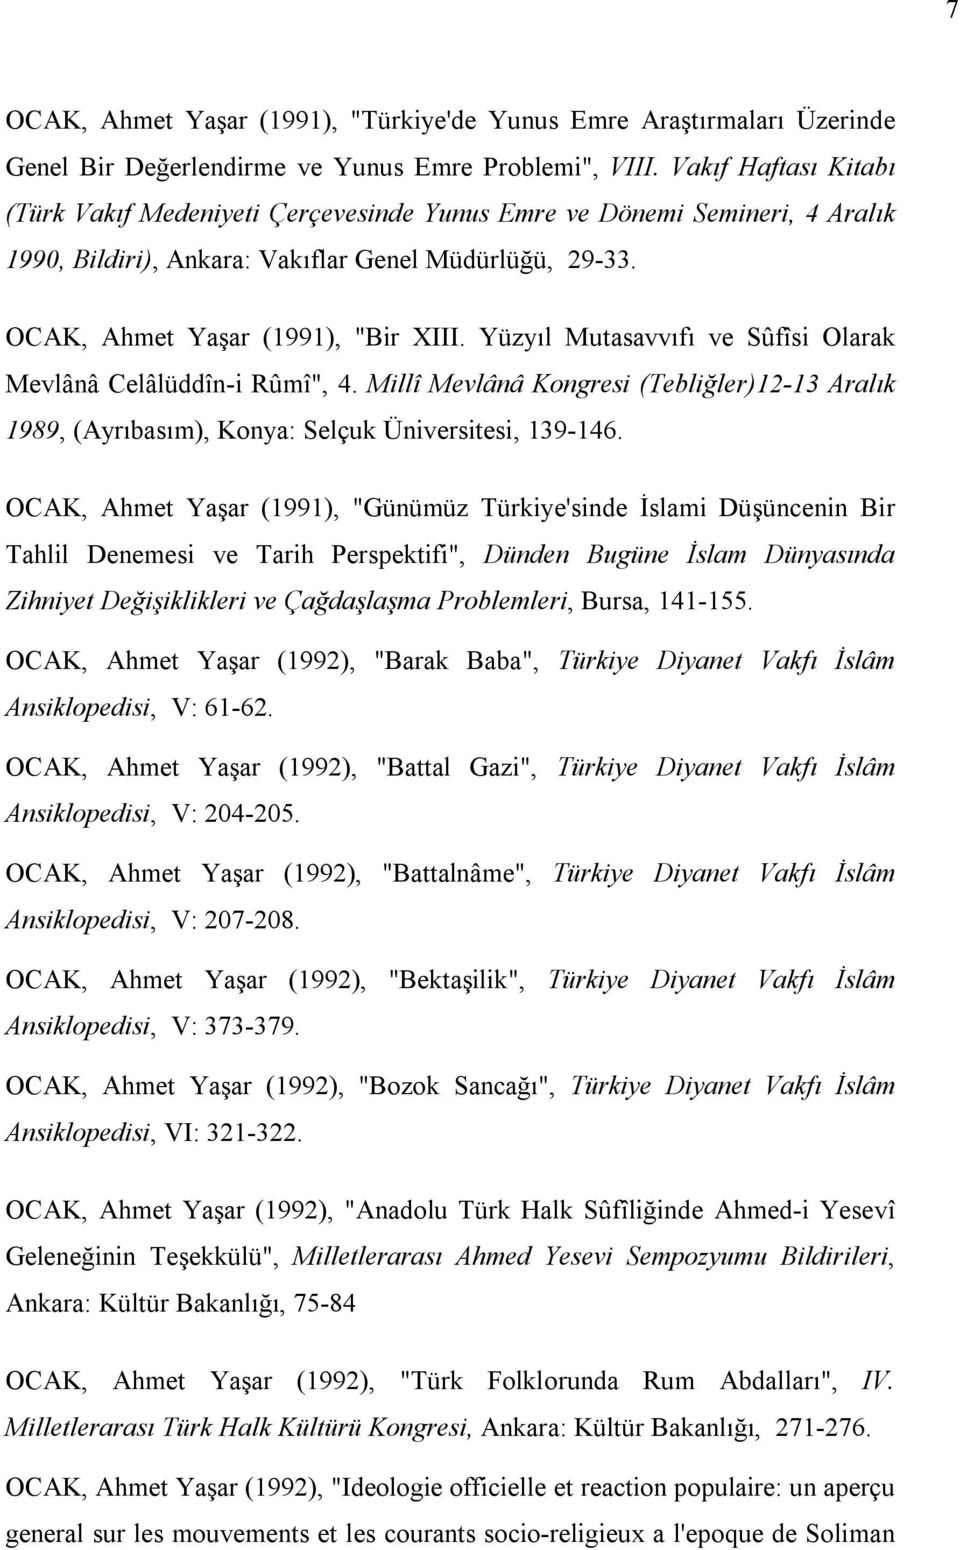 Yüzyıl Mutasavvıfı ve Sûfîsi Olarak Mevlânâ Celâlüddîn-i Rûmî", 4. Millî Mevlânâ Kongresi (Tebliğler)12-13 Aralık 1989, (Ayrıbasım), Konya: Selçuk Üniversitesi, 139-146.